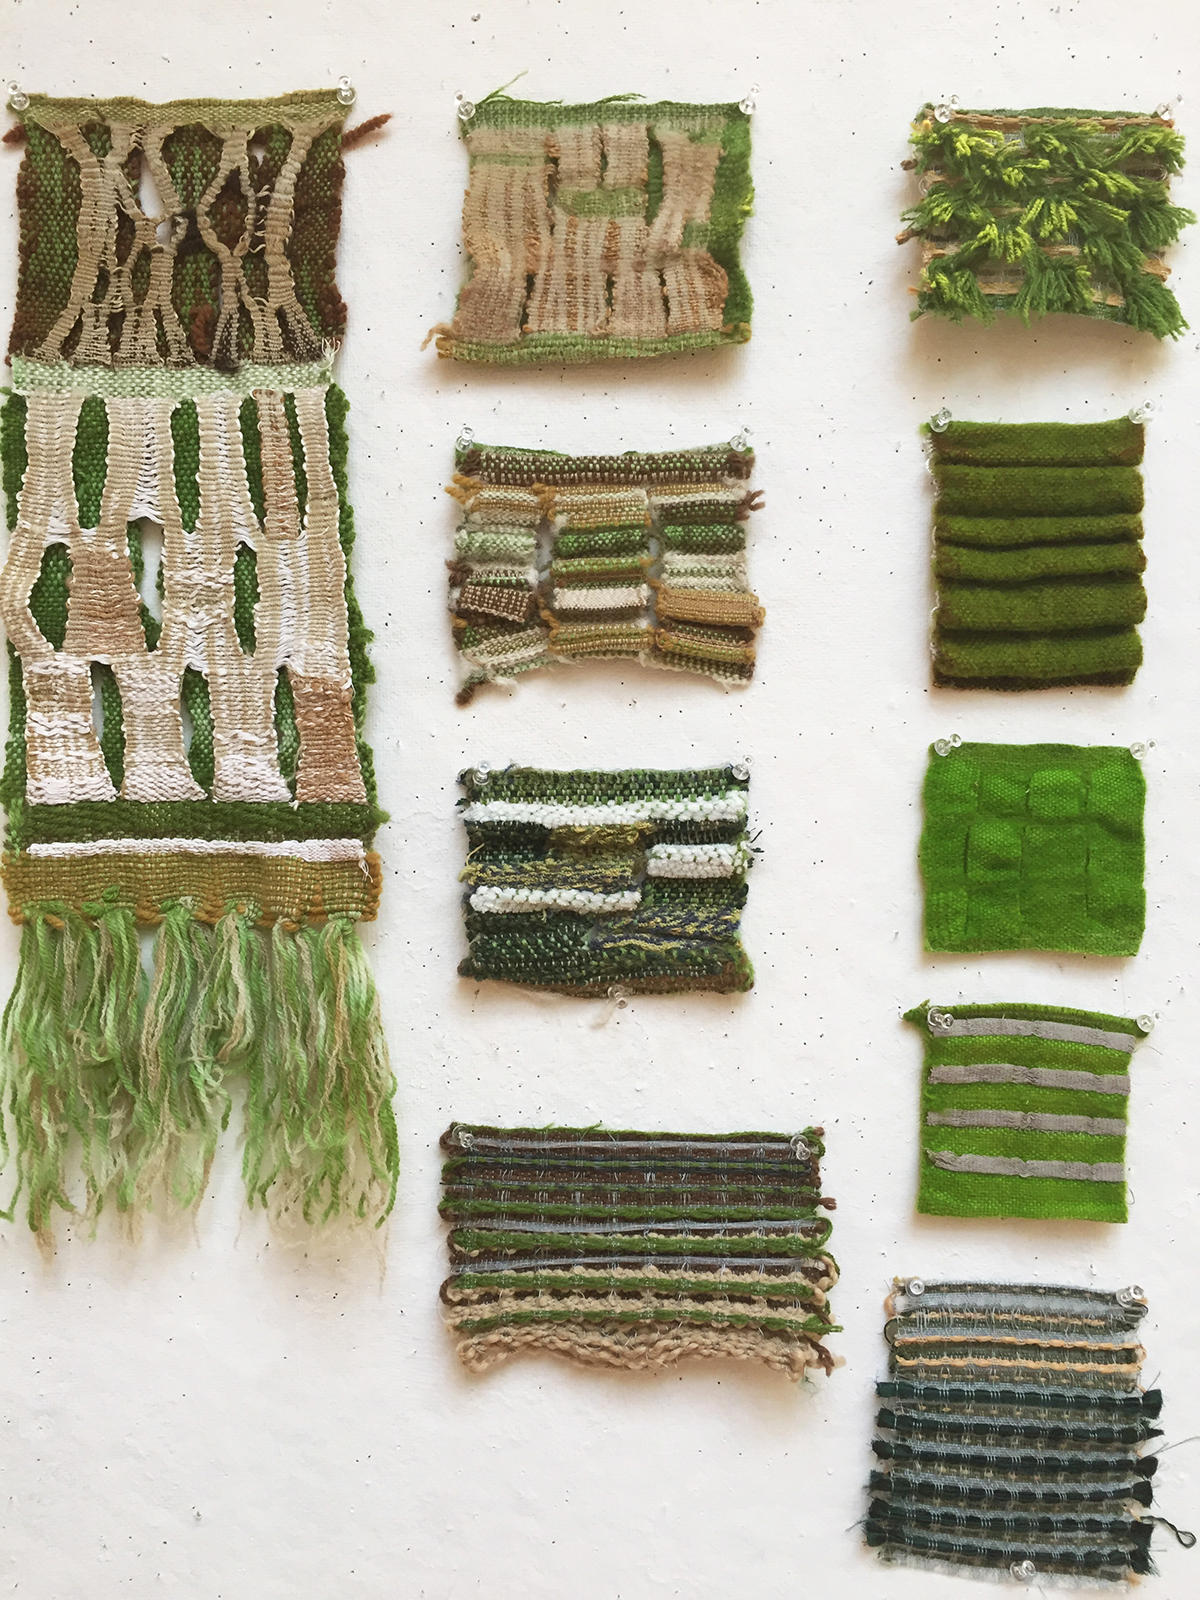 Textiles weaving Woven handloom